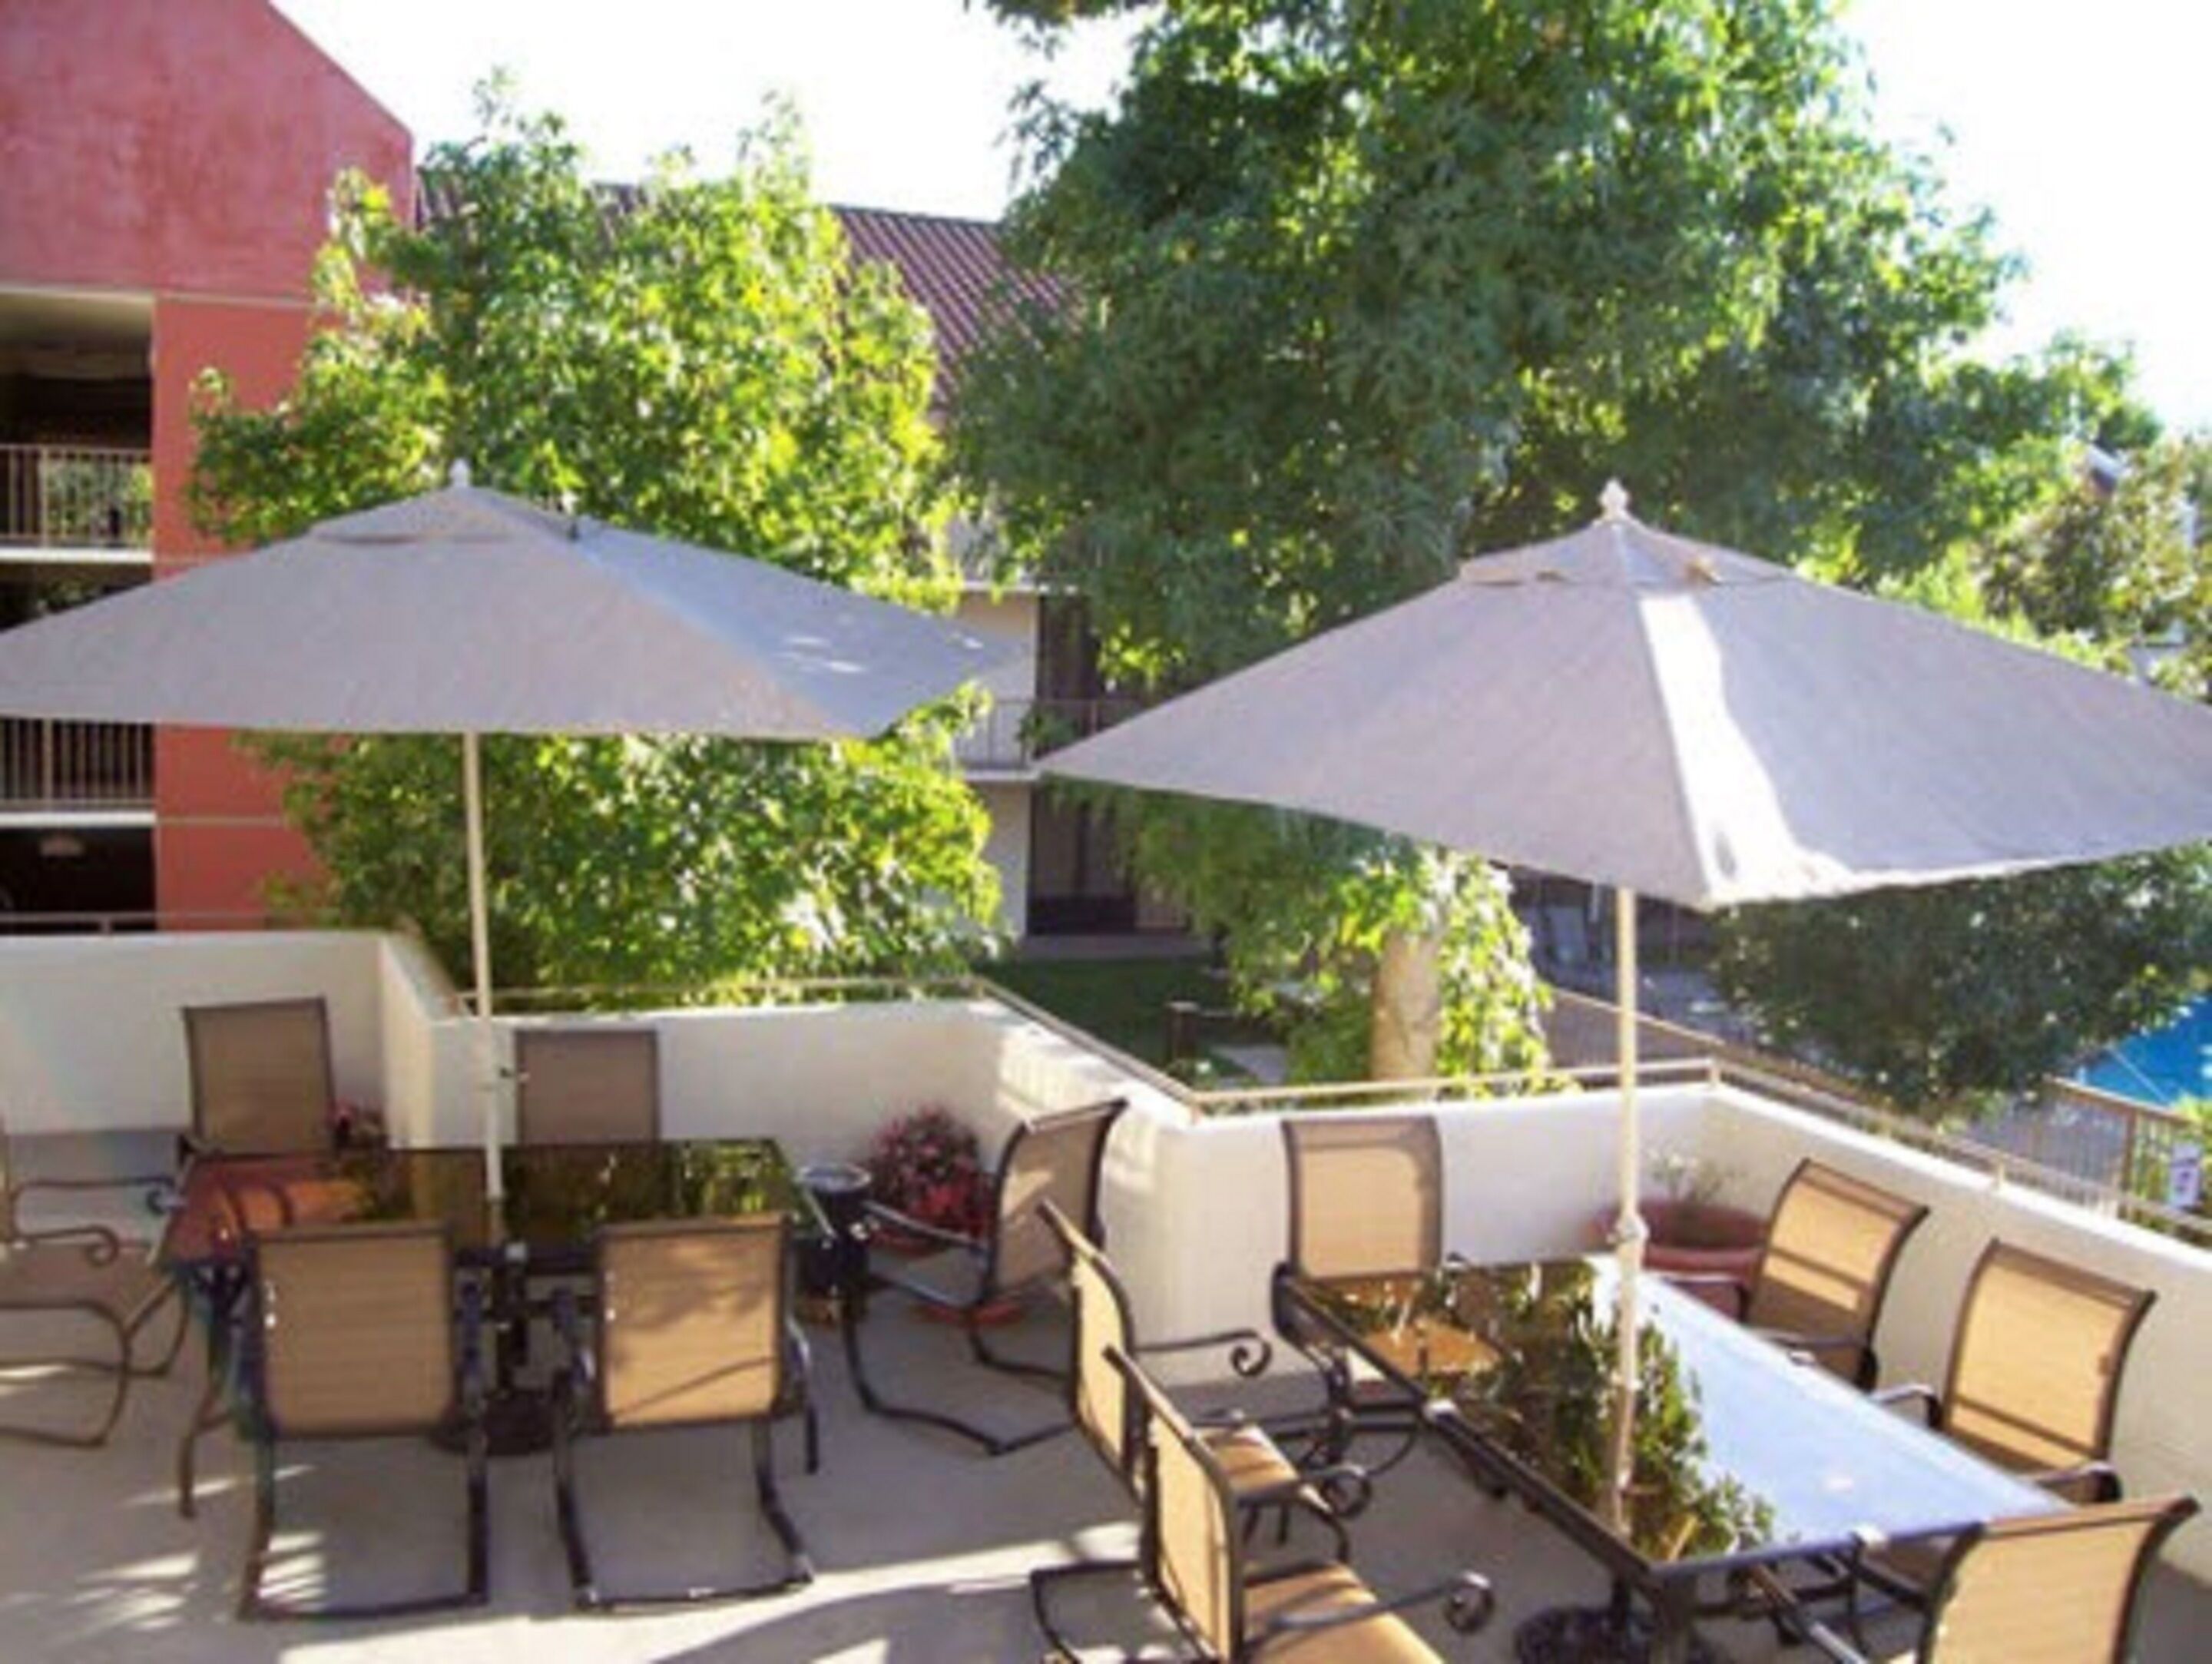 La Quinta Inn & Suites by Wyndham Thousand Oaks - Newbury Park